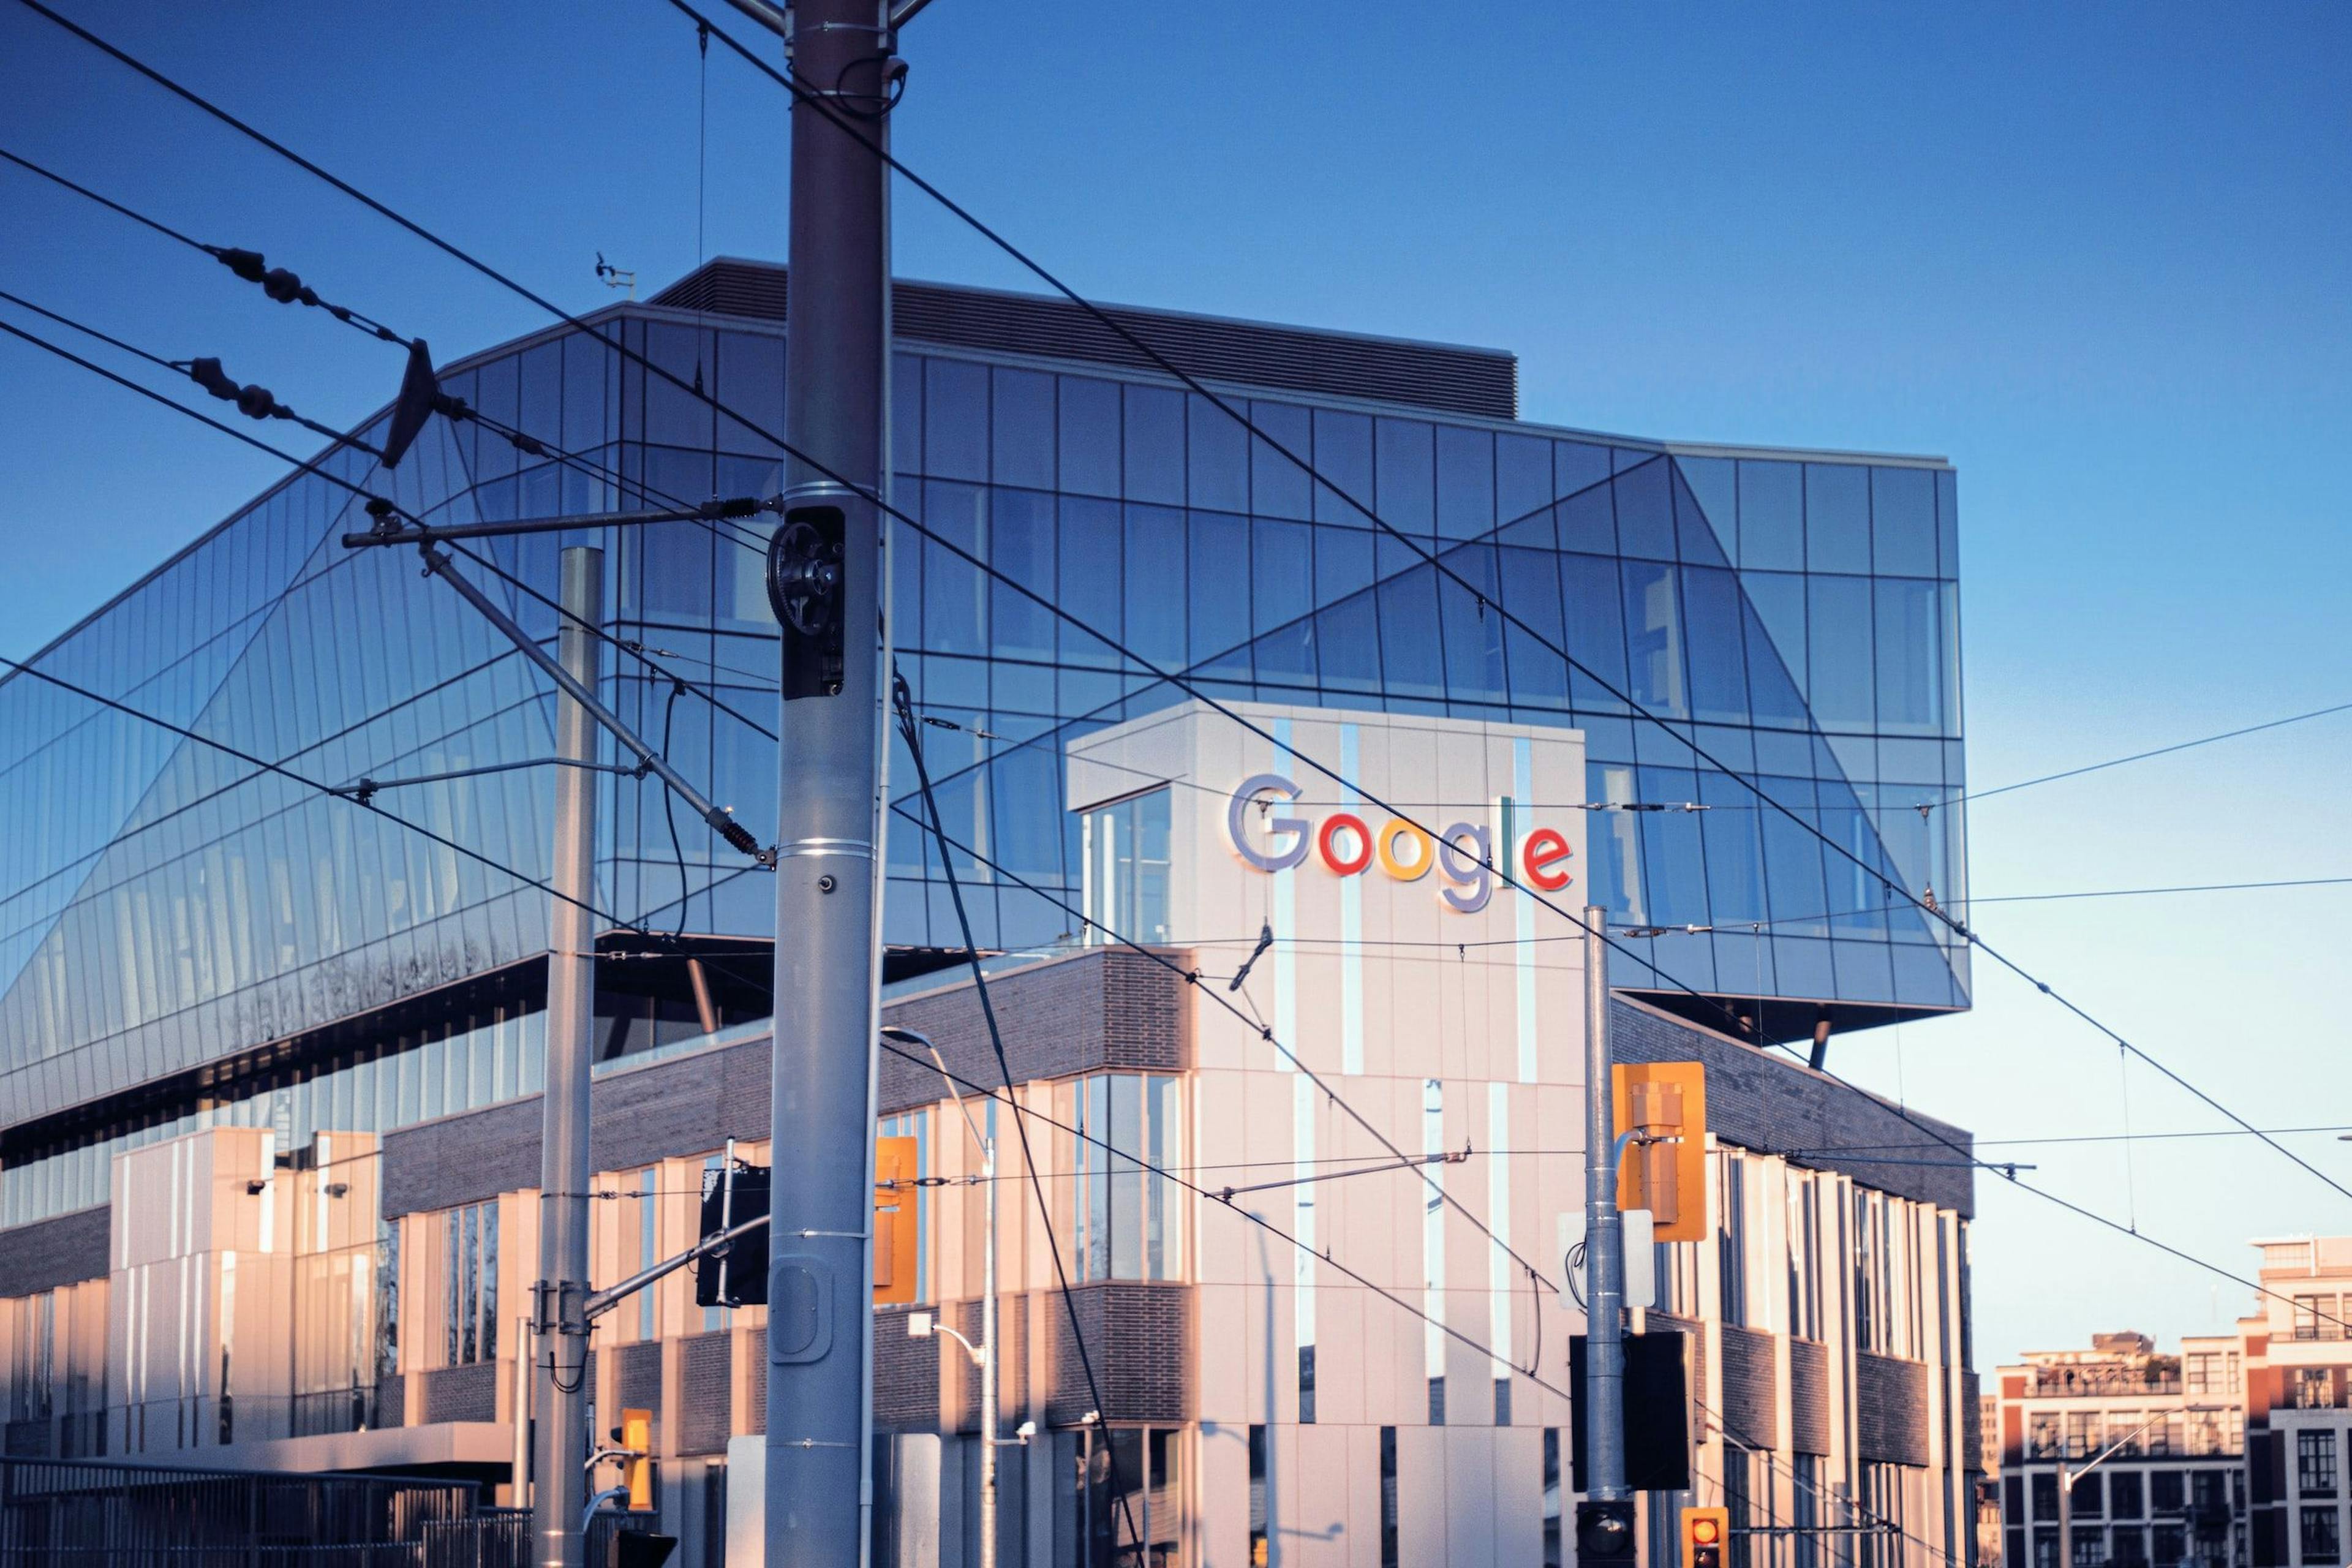 featured image - Nhân viên của Google Cân nhắc các Công việc Khác Sau các Kế hoạch Trở lại Văn phòng của Công ty